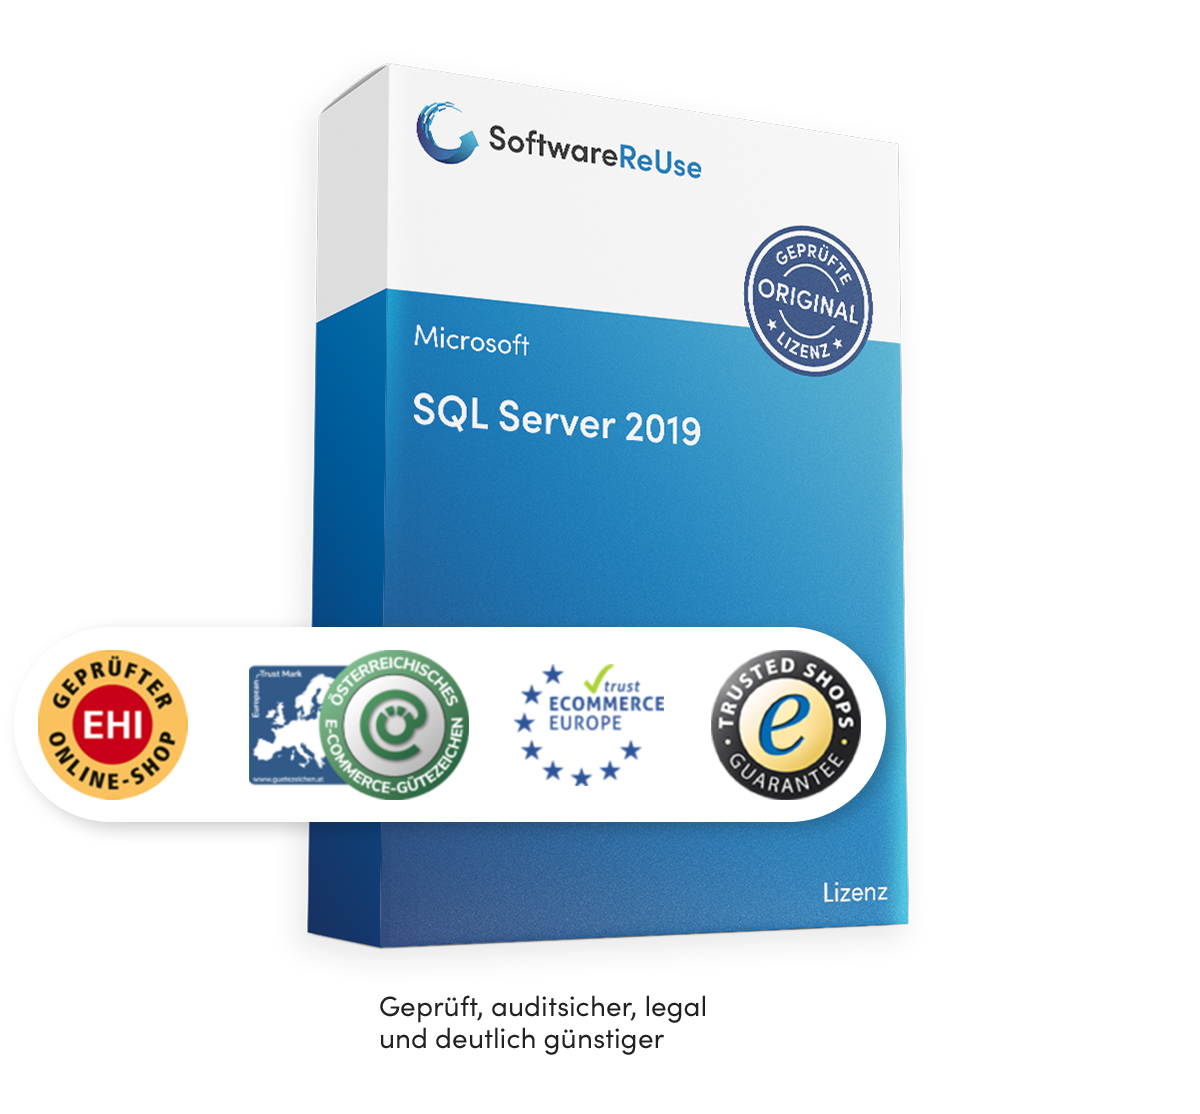 Microsoft SQL Server 2019 mit Siegeln